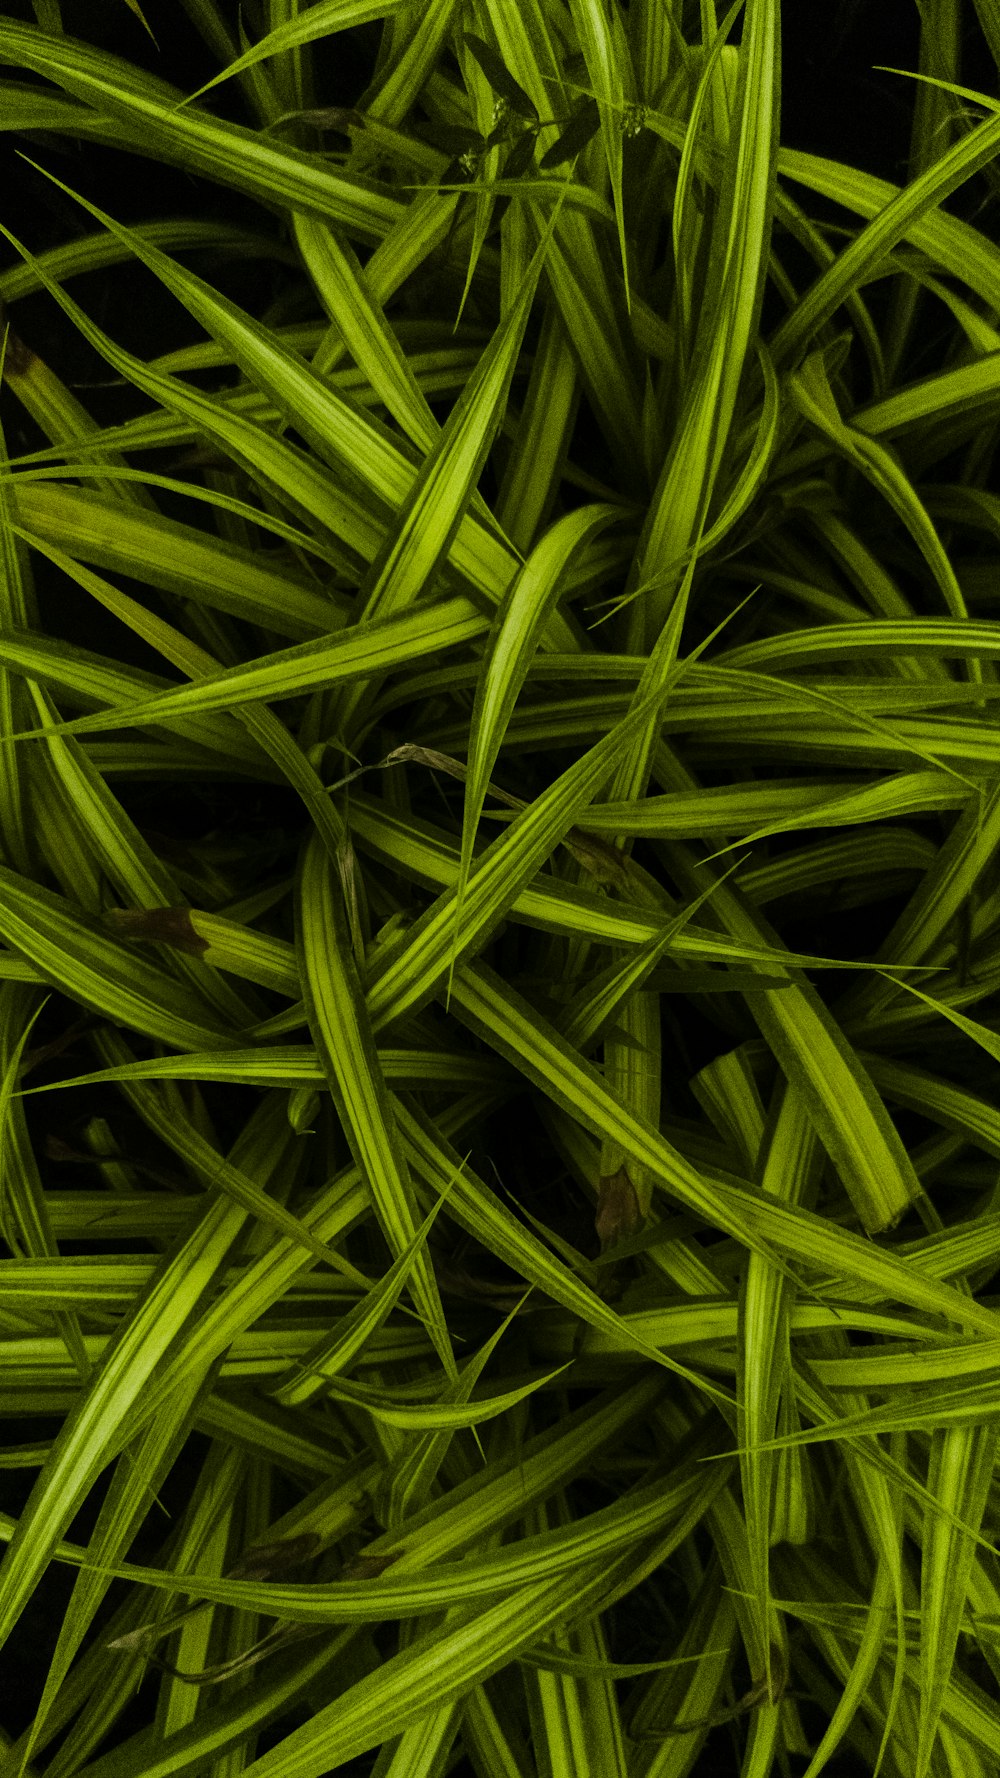 um close up de um monte de grama verde